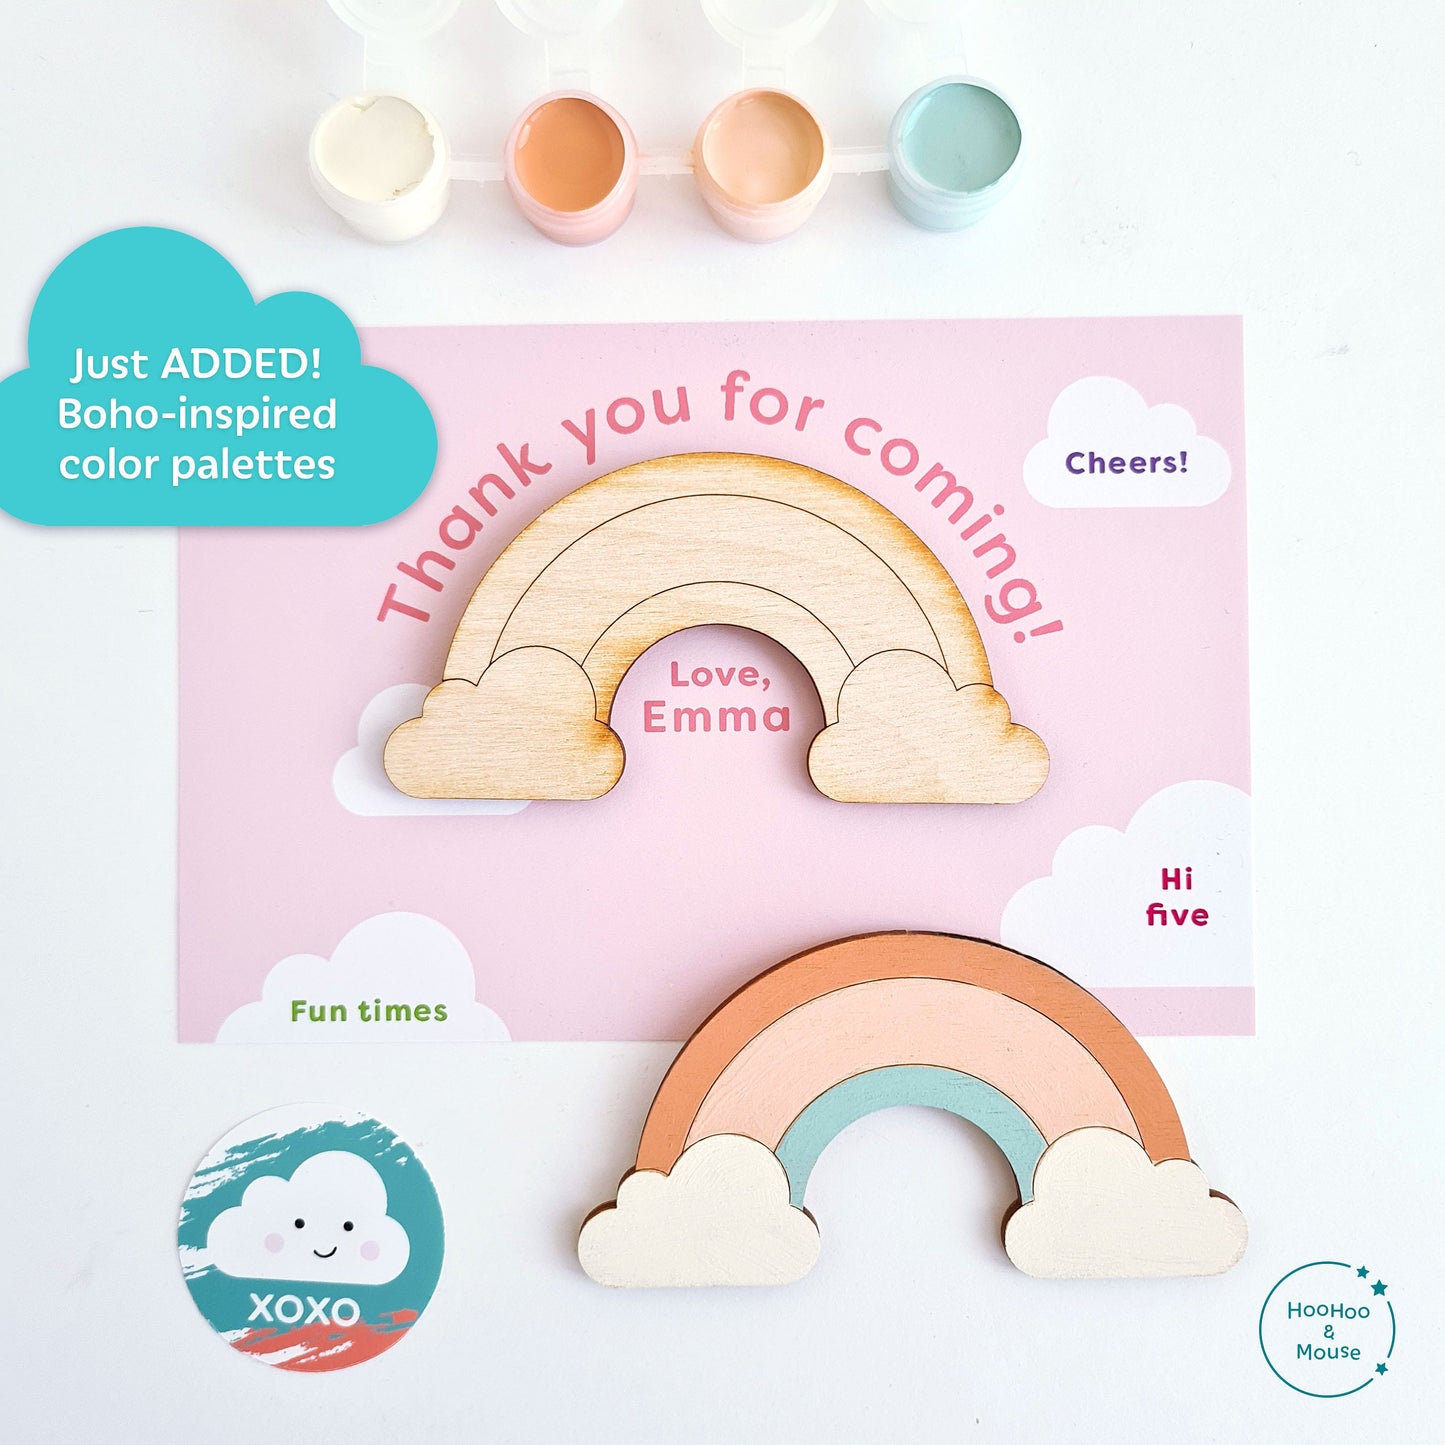 Rainbow Party Favor Paint Kit, personalized (Cloud Design)